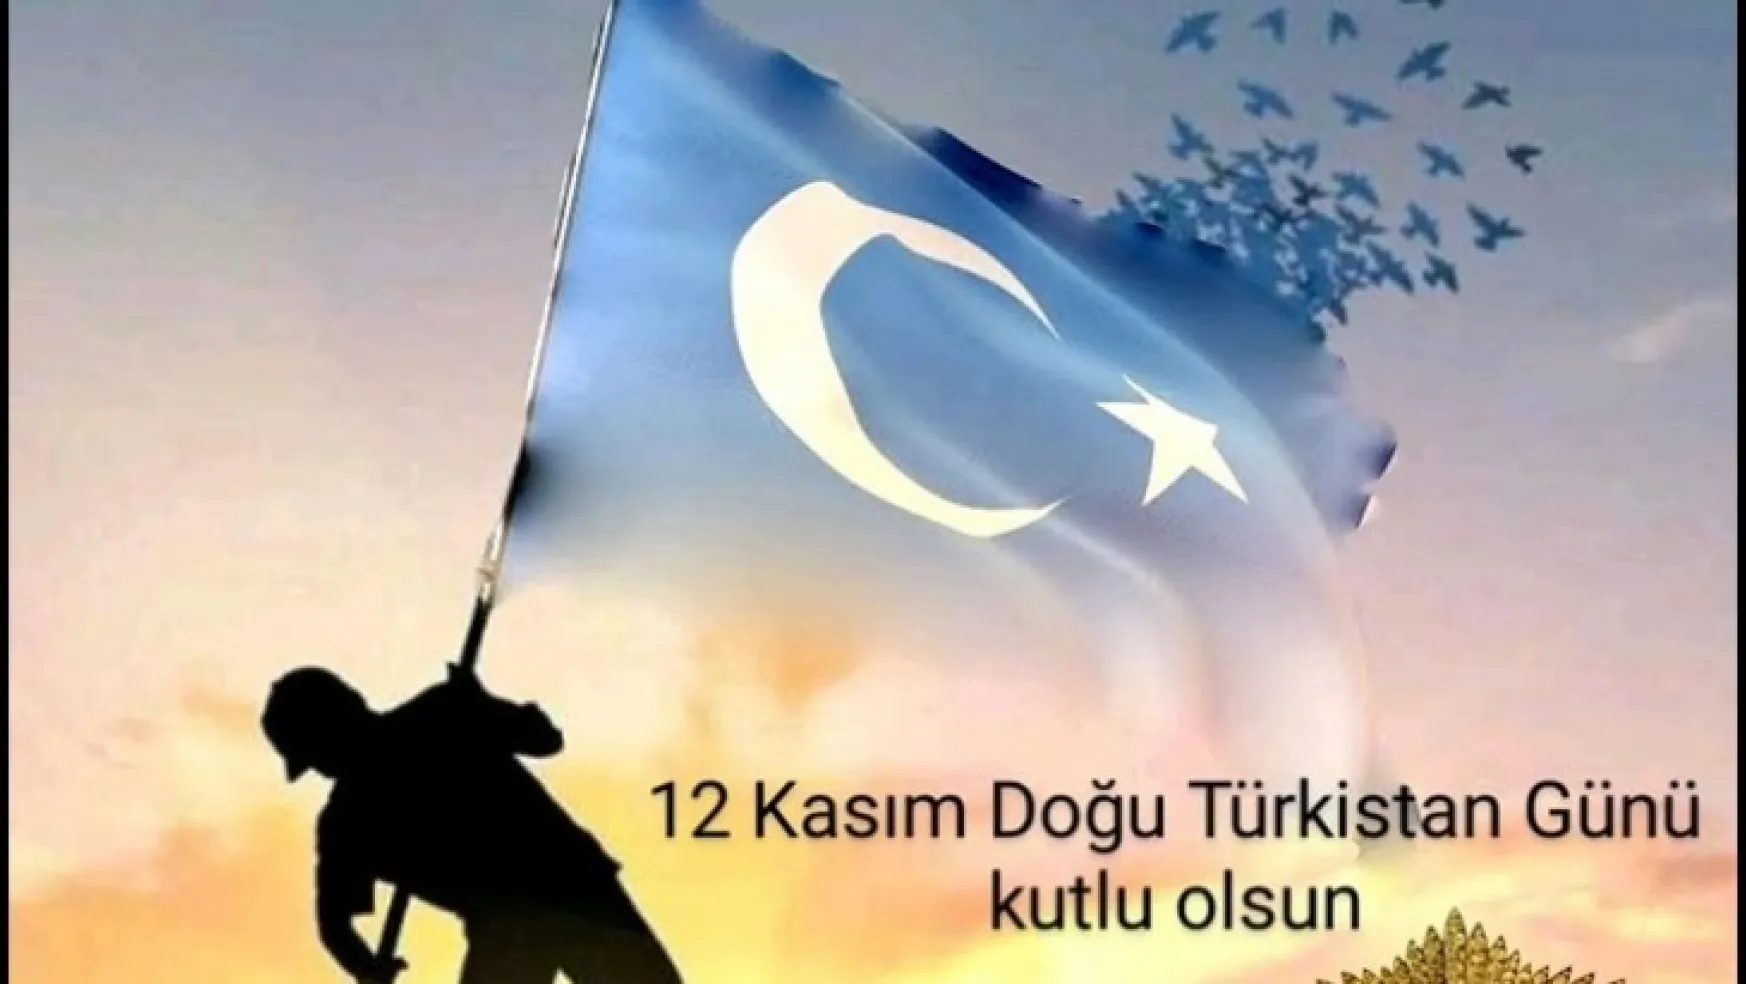 '12 Kasım Doğu Türkistan Günü' Kutlu Olsun!